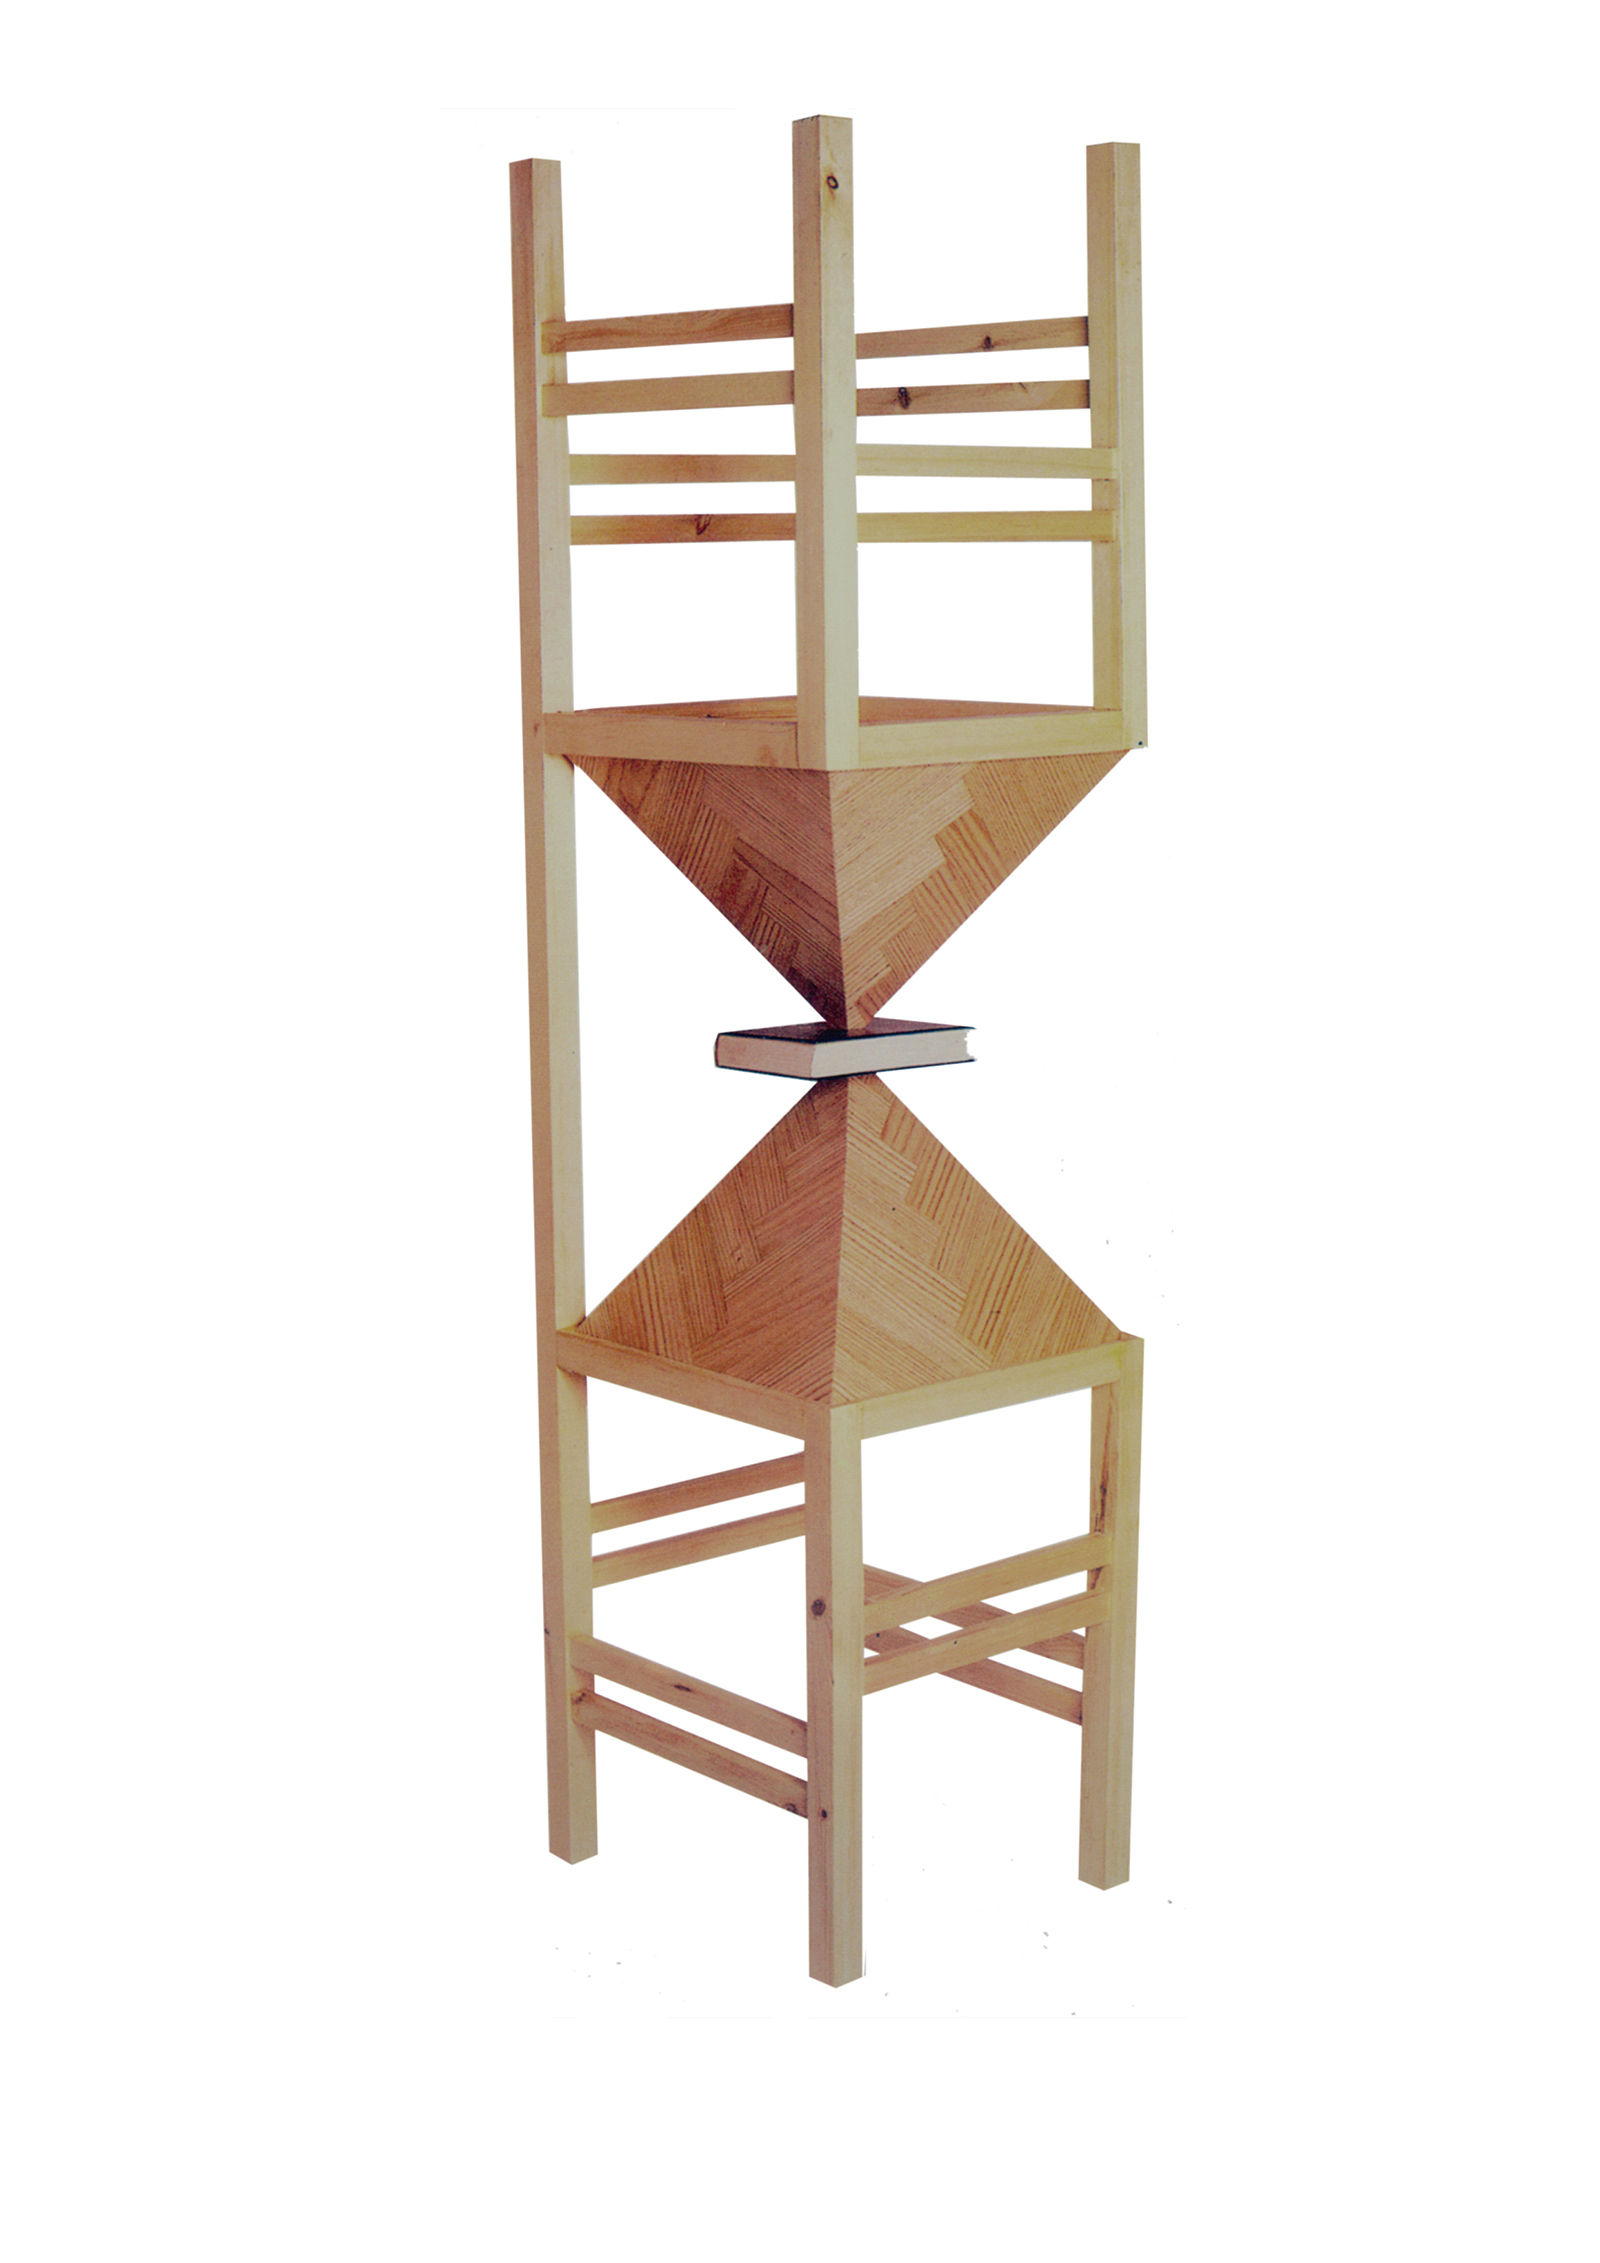 Τιτλος: Η Καρέκλα του Μαρξ
Υλικά: Ξύλο, Βιβλίο
Μέγεθος: 180x46x42 cm
Έτος: 2000